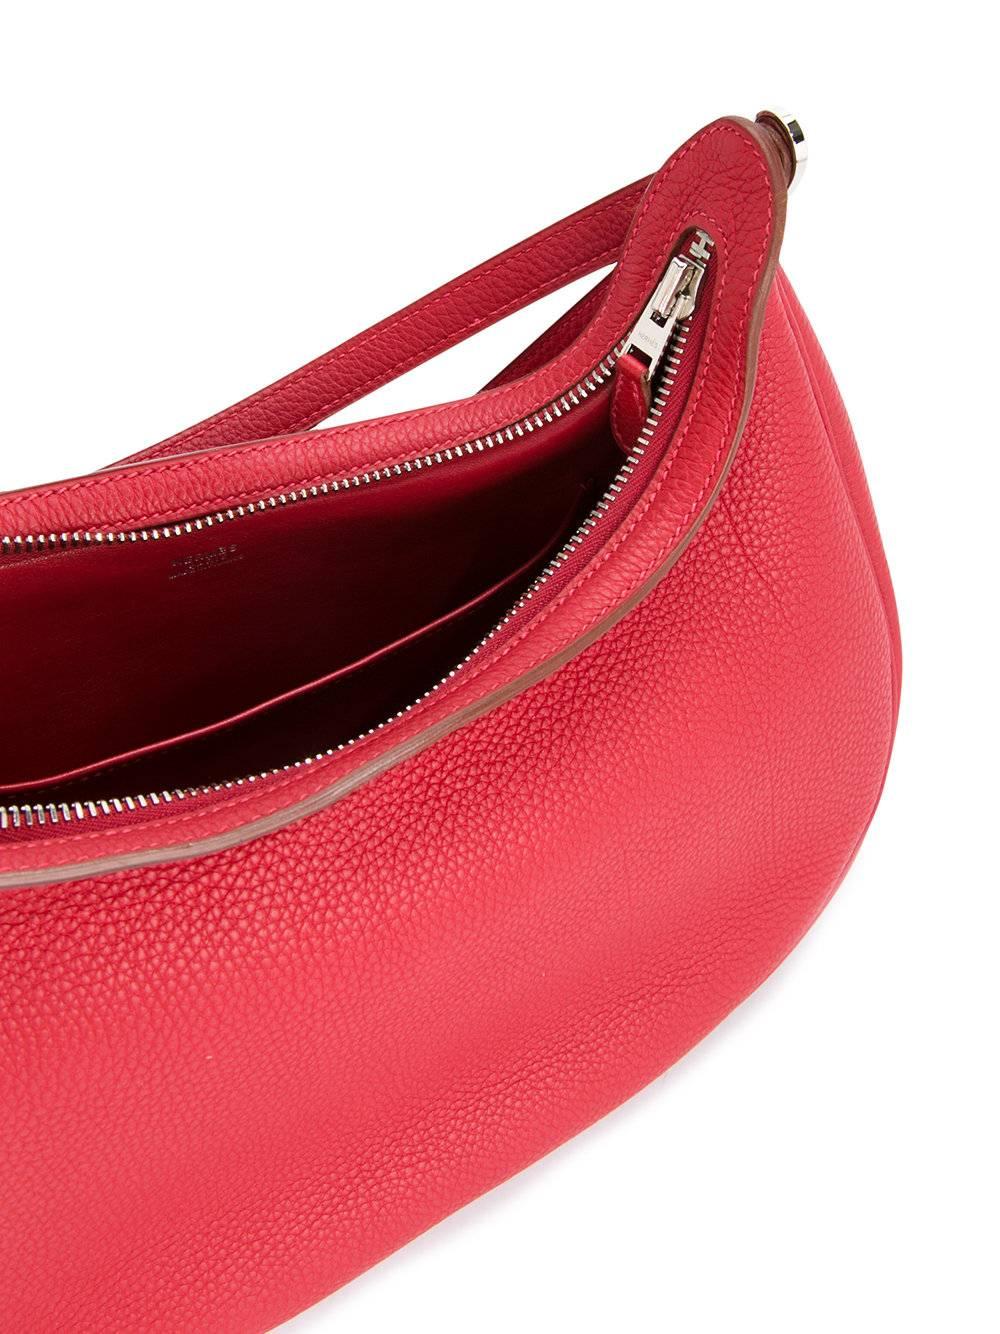 Hermes Red Leather Triple Strap Top Handle Evening Satchel Shoulder Bag 1